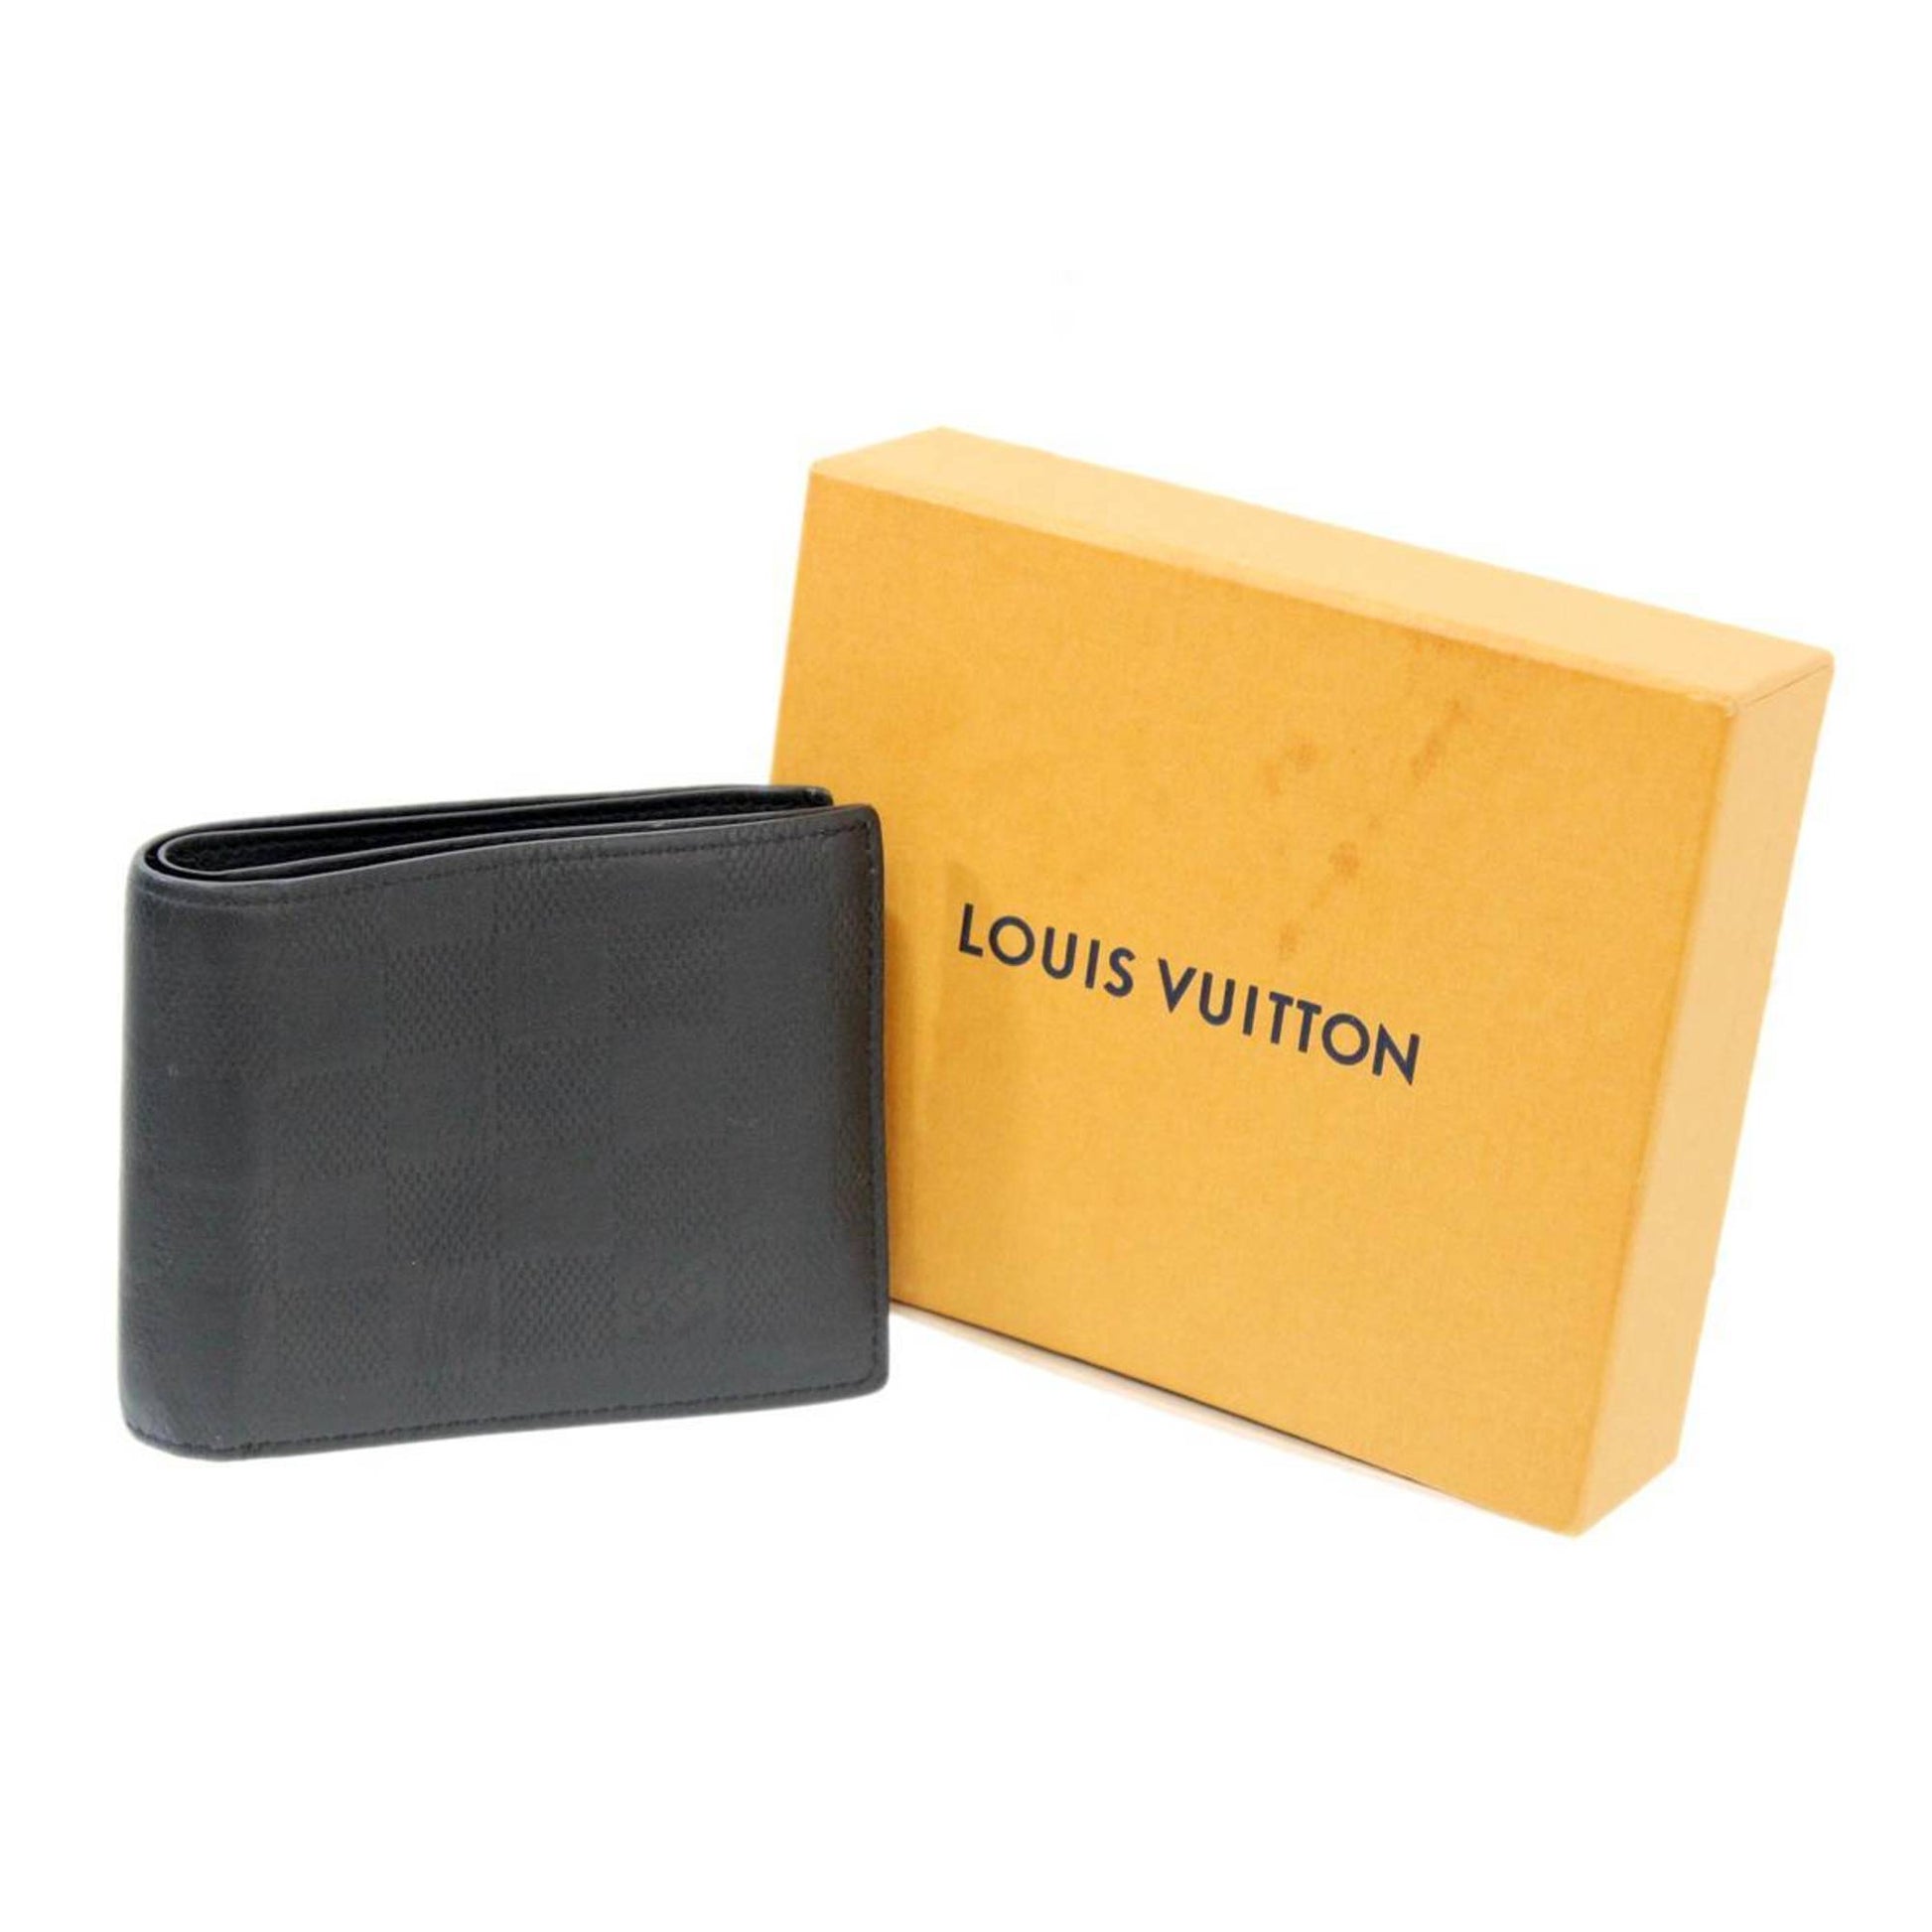 LOUIS VUITTON Pocket Organizer Taiga leather Black M63329